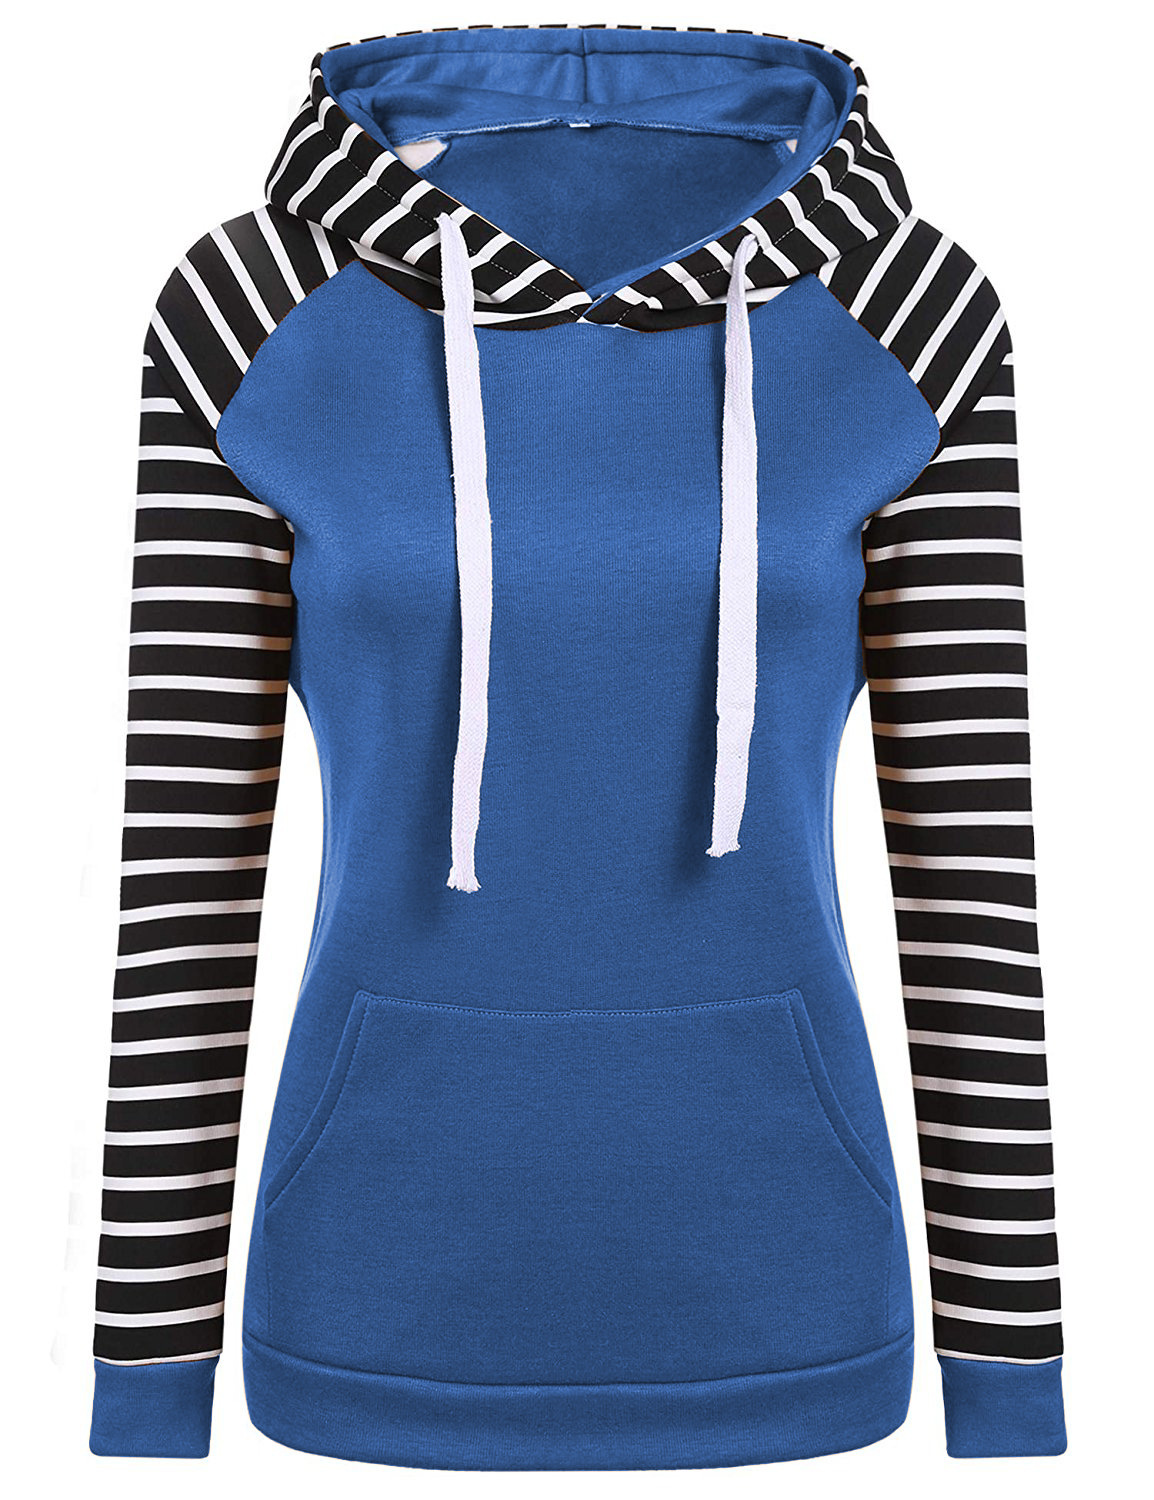 Spring Autumn Striped Fleece Hoodies Women Long Sleeve Pullover Streetwear Hooded Sweatshirt Blue